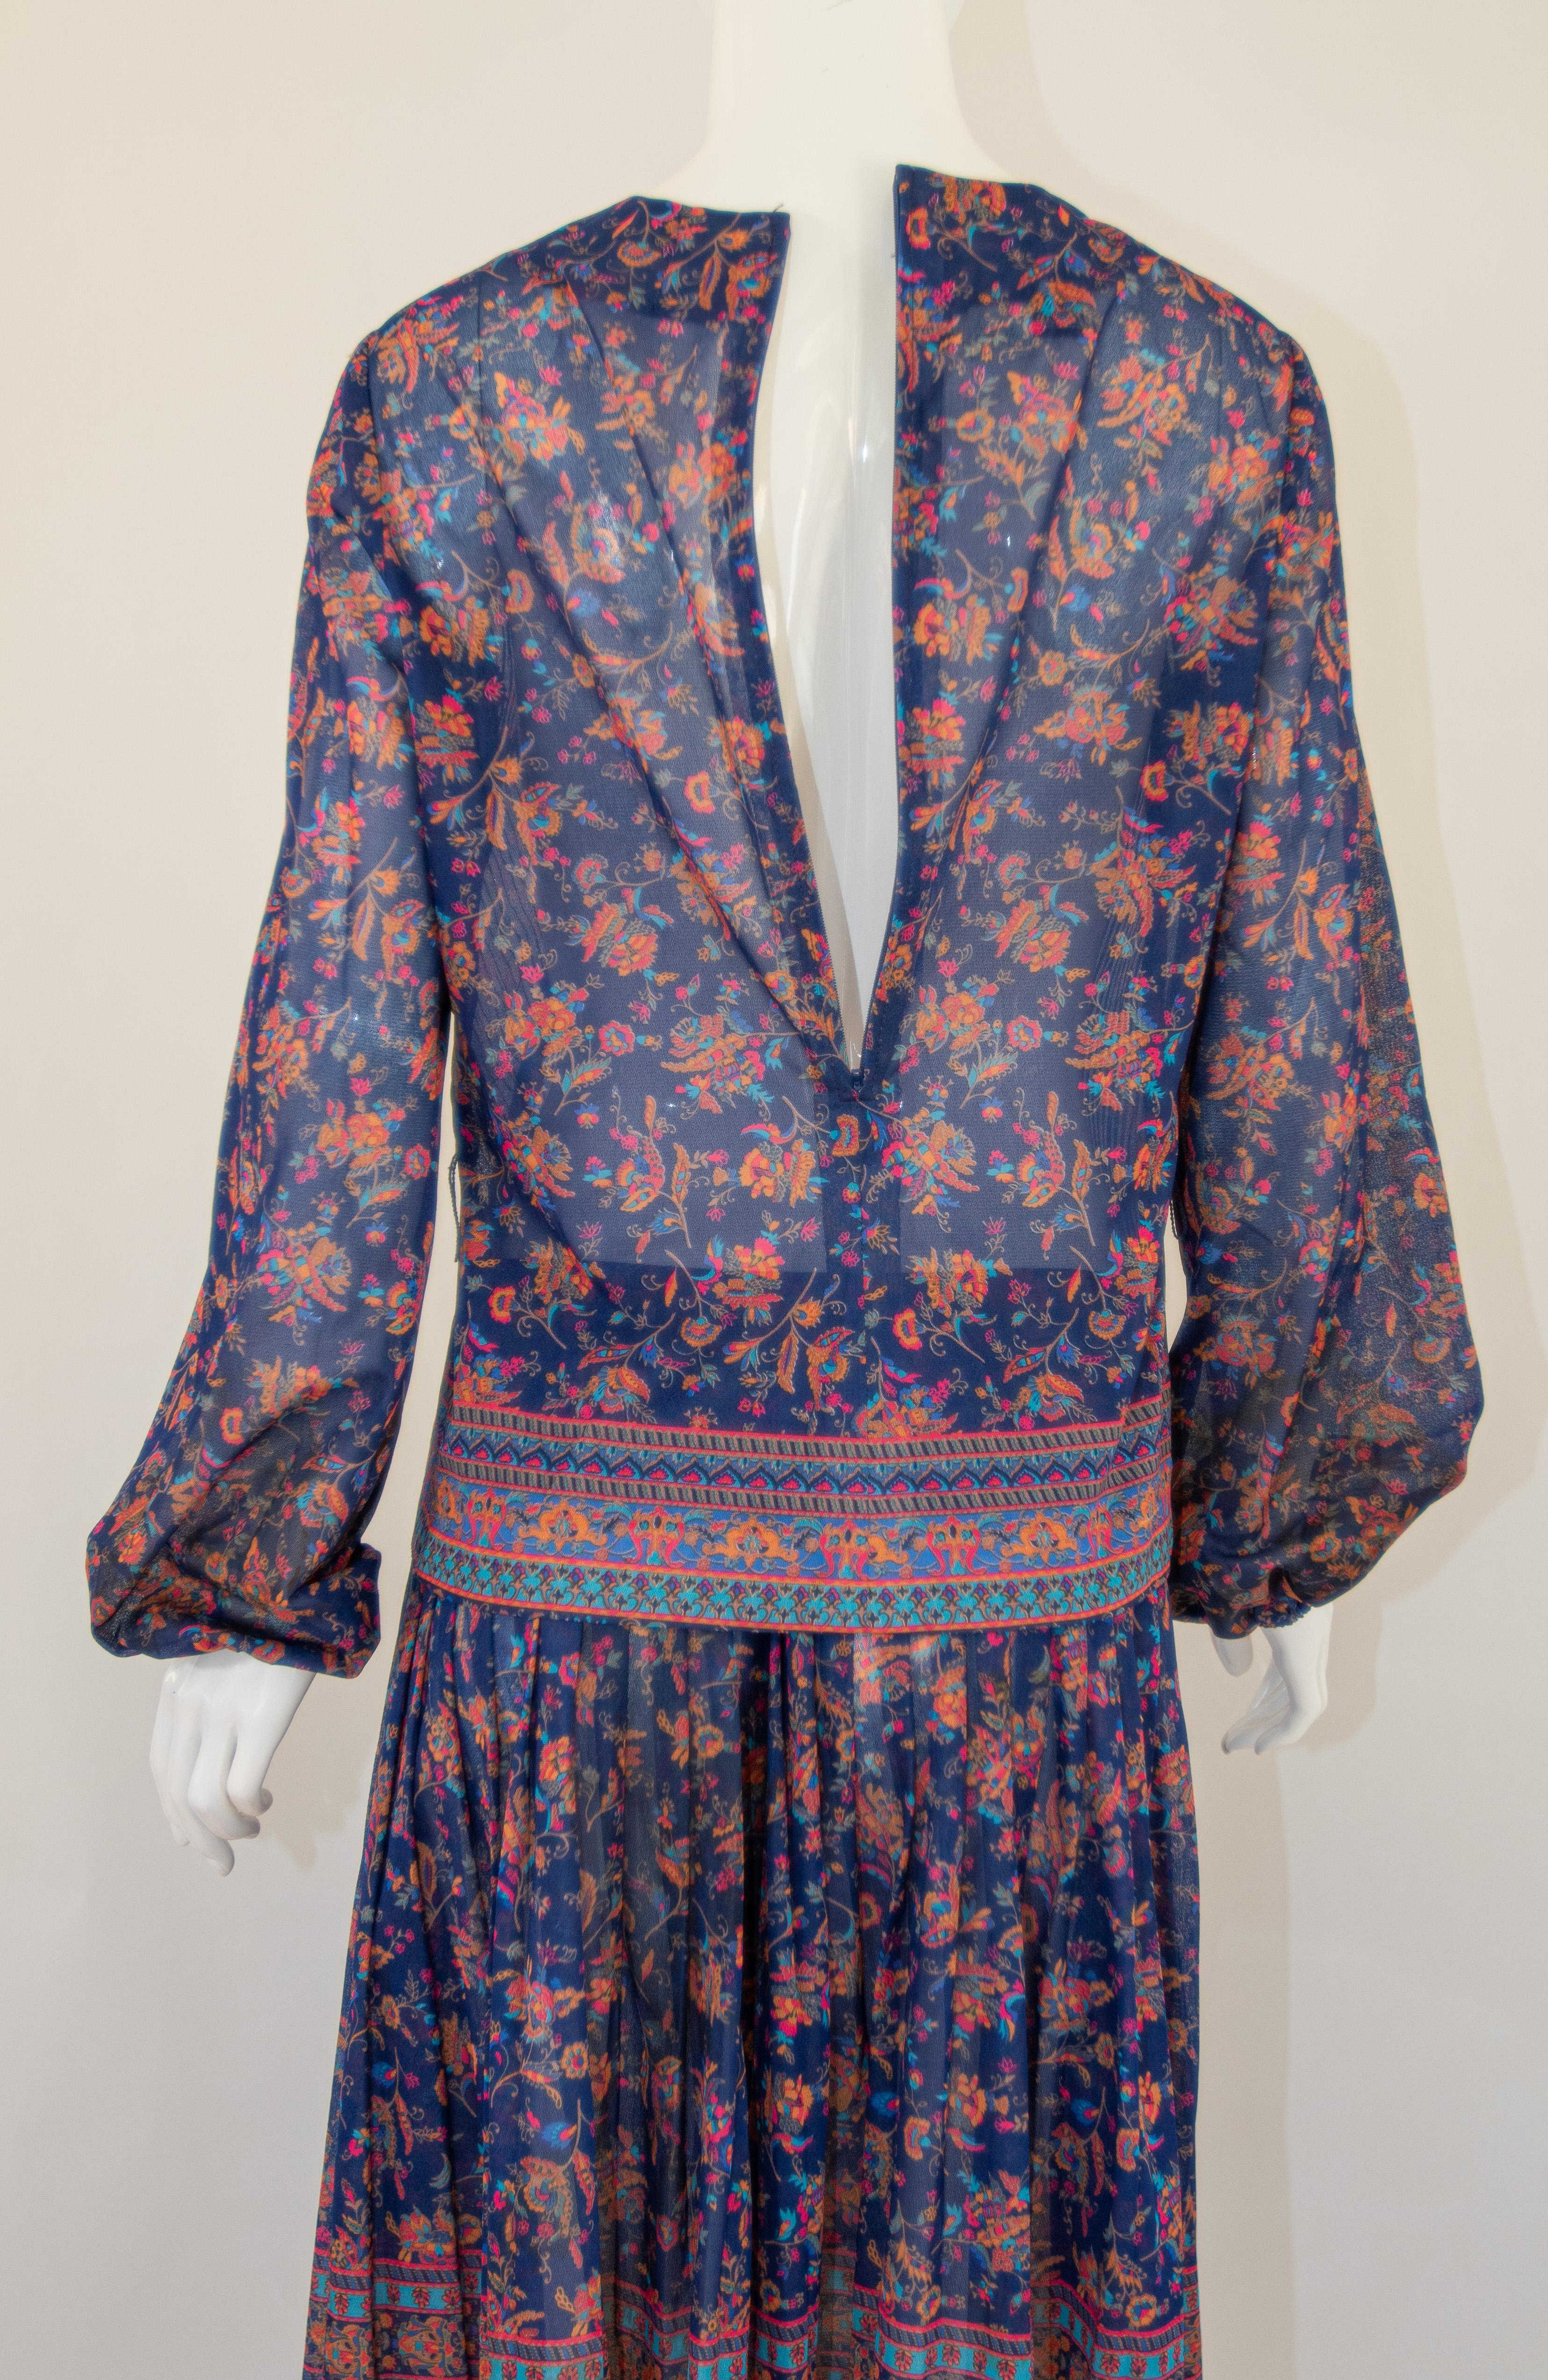 1970s Vintage Bohemian Floral Printed Dress Miss Magnin at I. Magnin For Sale 7